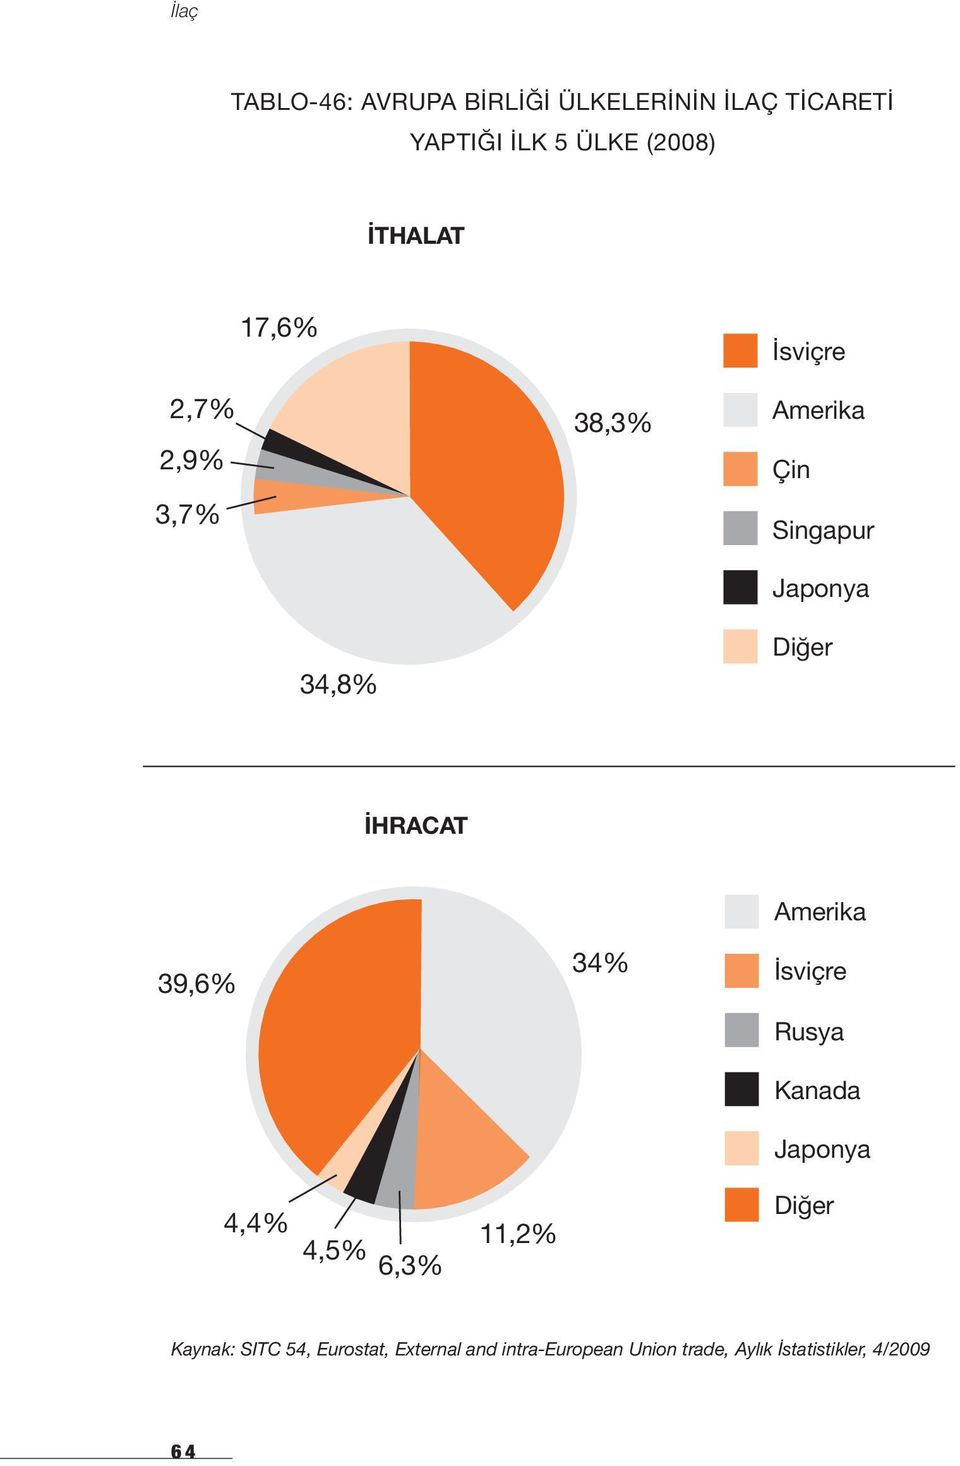 39,6% 4,4% 4,5% 6,3% 11,2% 34% Amerika İsviçre Rusya Kanada Japonya Diğer Kaynak: